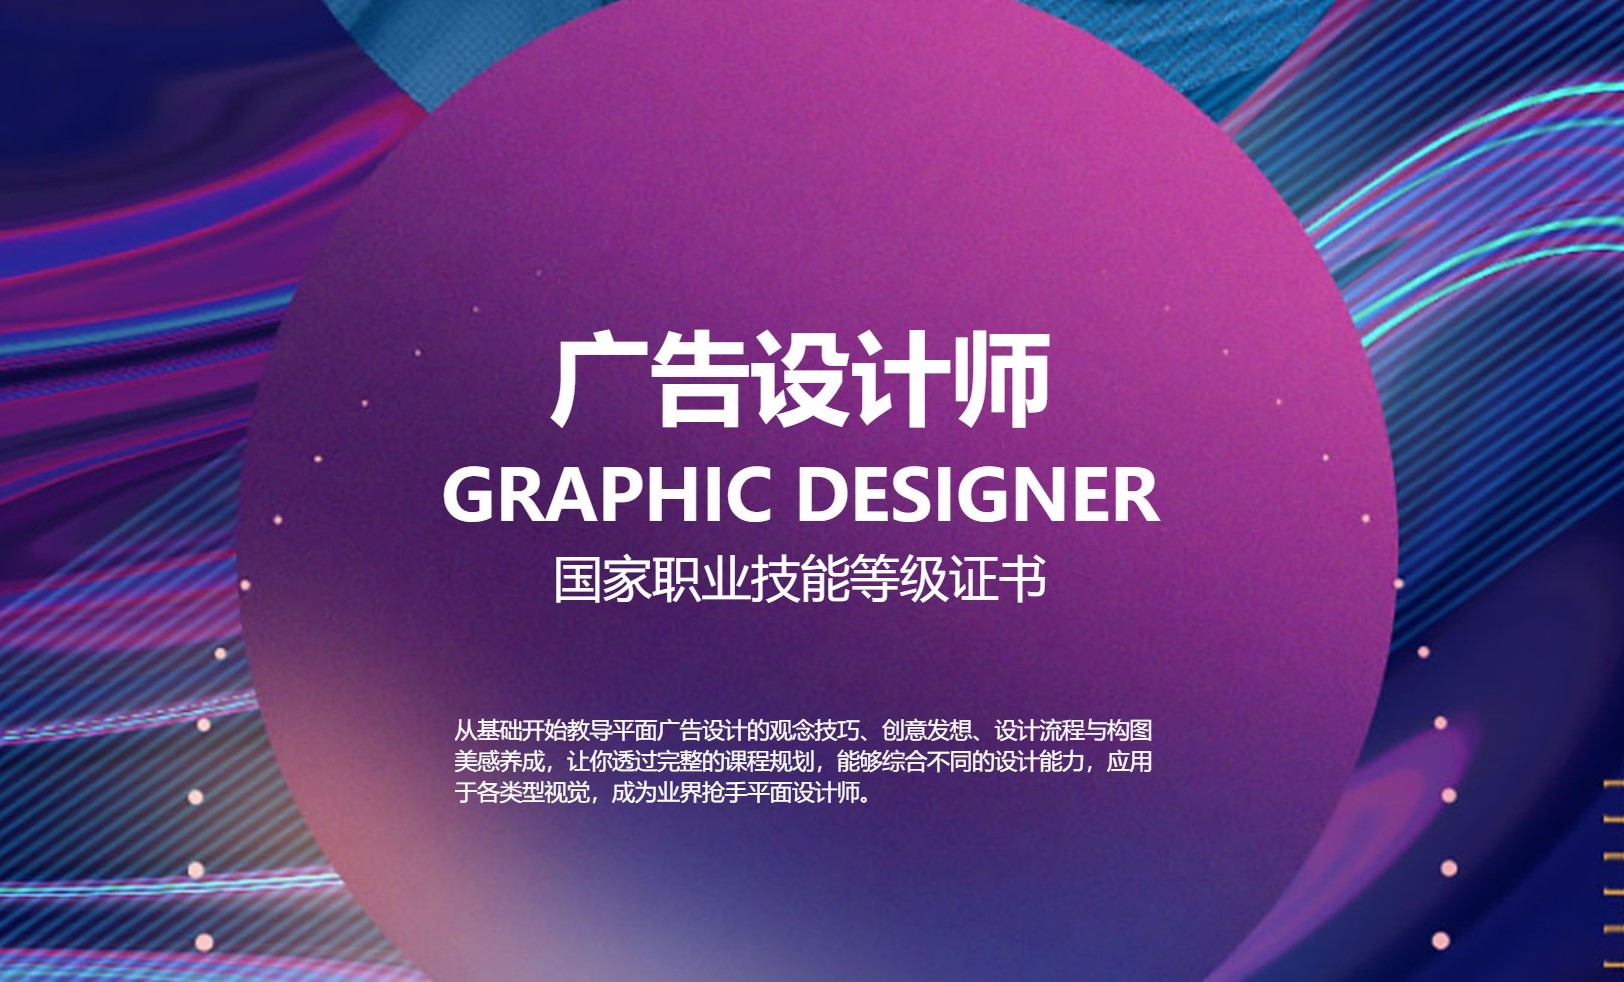 上海五加一证书培训中心上海五加一培训 广告设计师职业技能等级培训 政府补贴图片